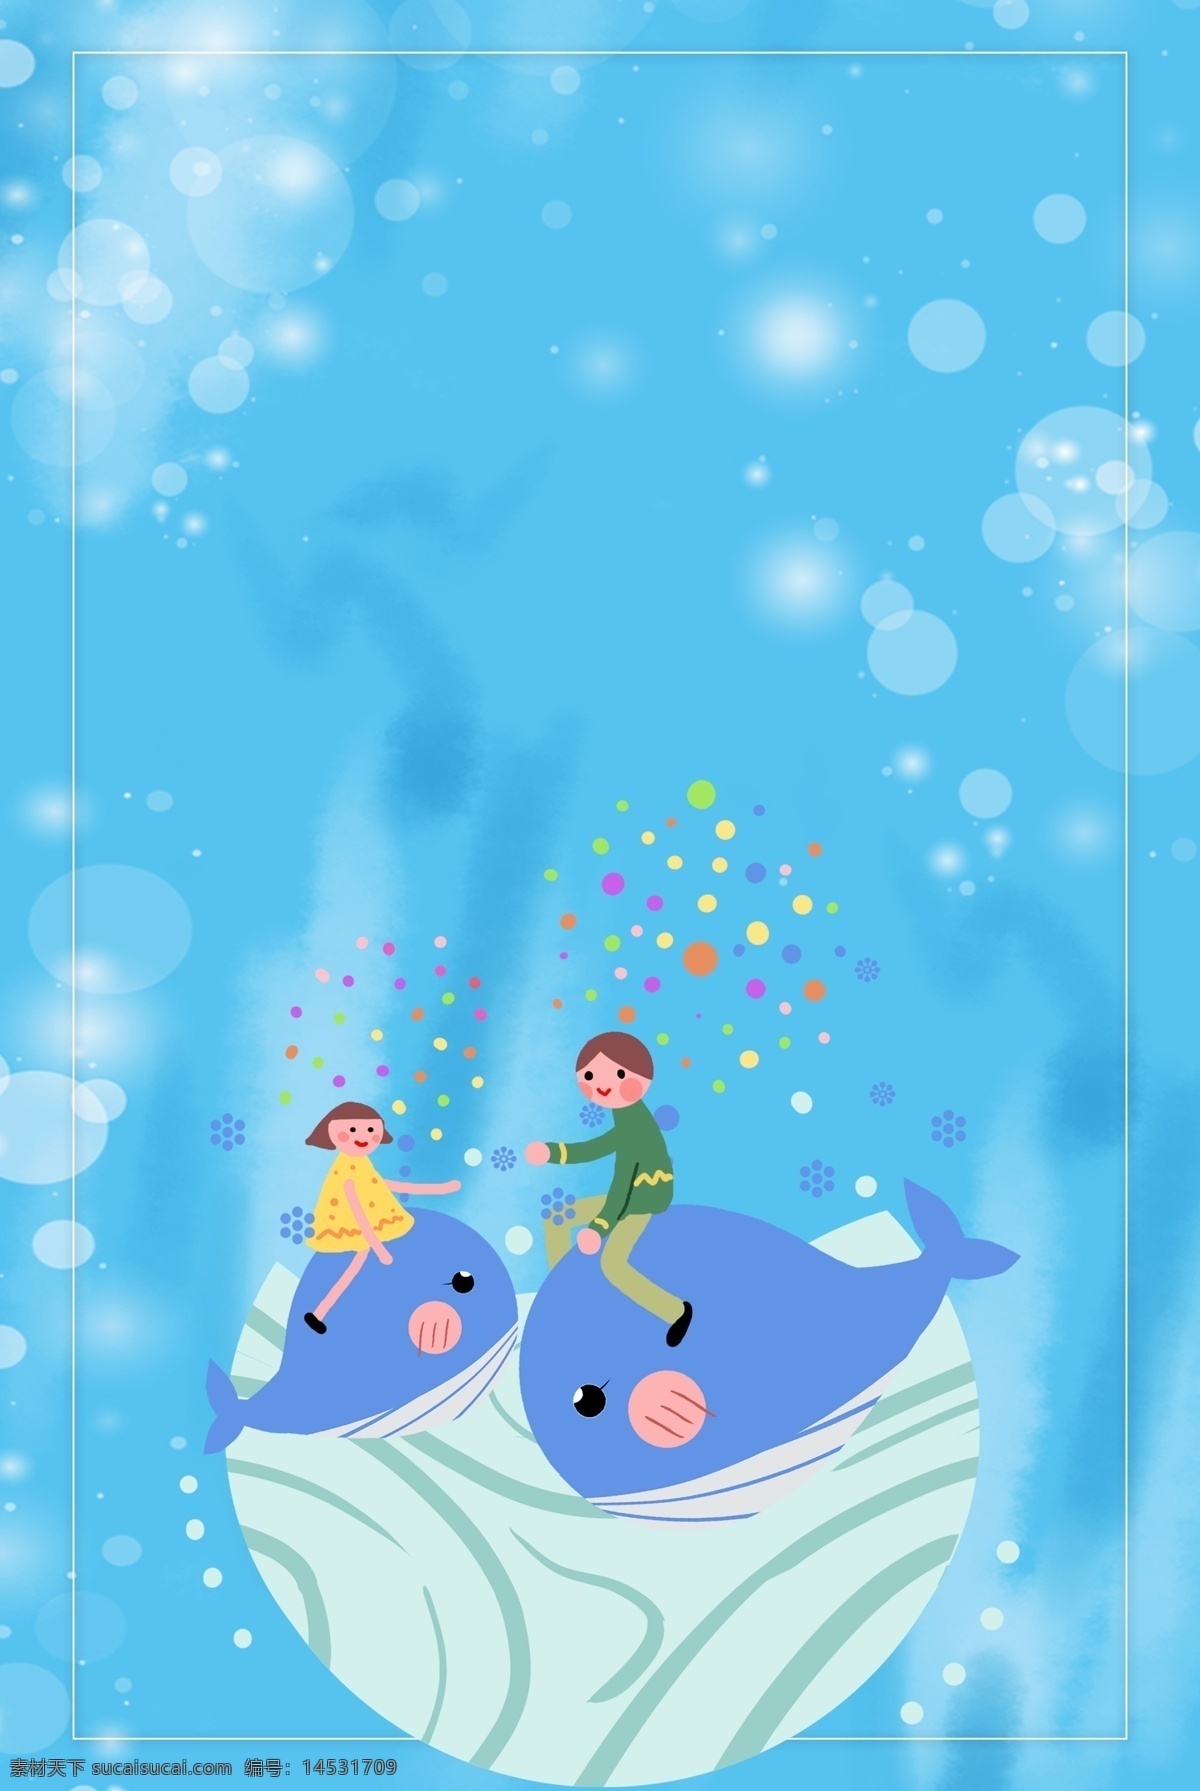 鲸鱼 孩子 电商 淘宝 背景 卡通 女孩 童装 男孩 海洋 清新 蓝色 插画 春季上新 气泡 六一 淘宝背景